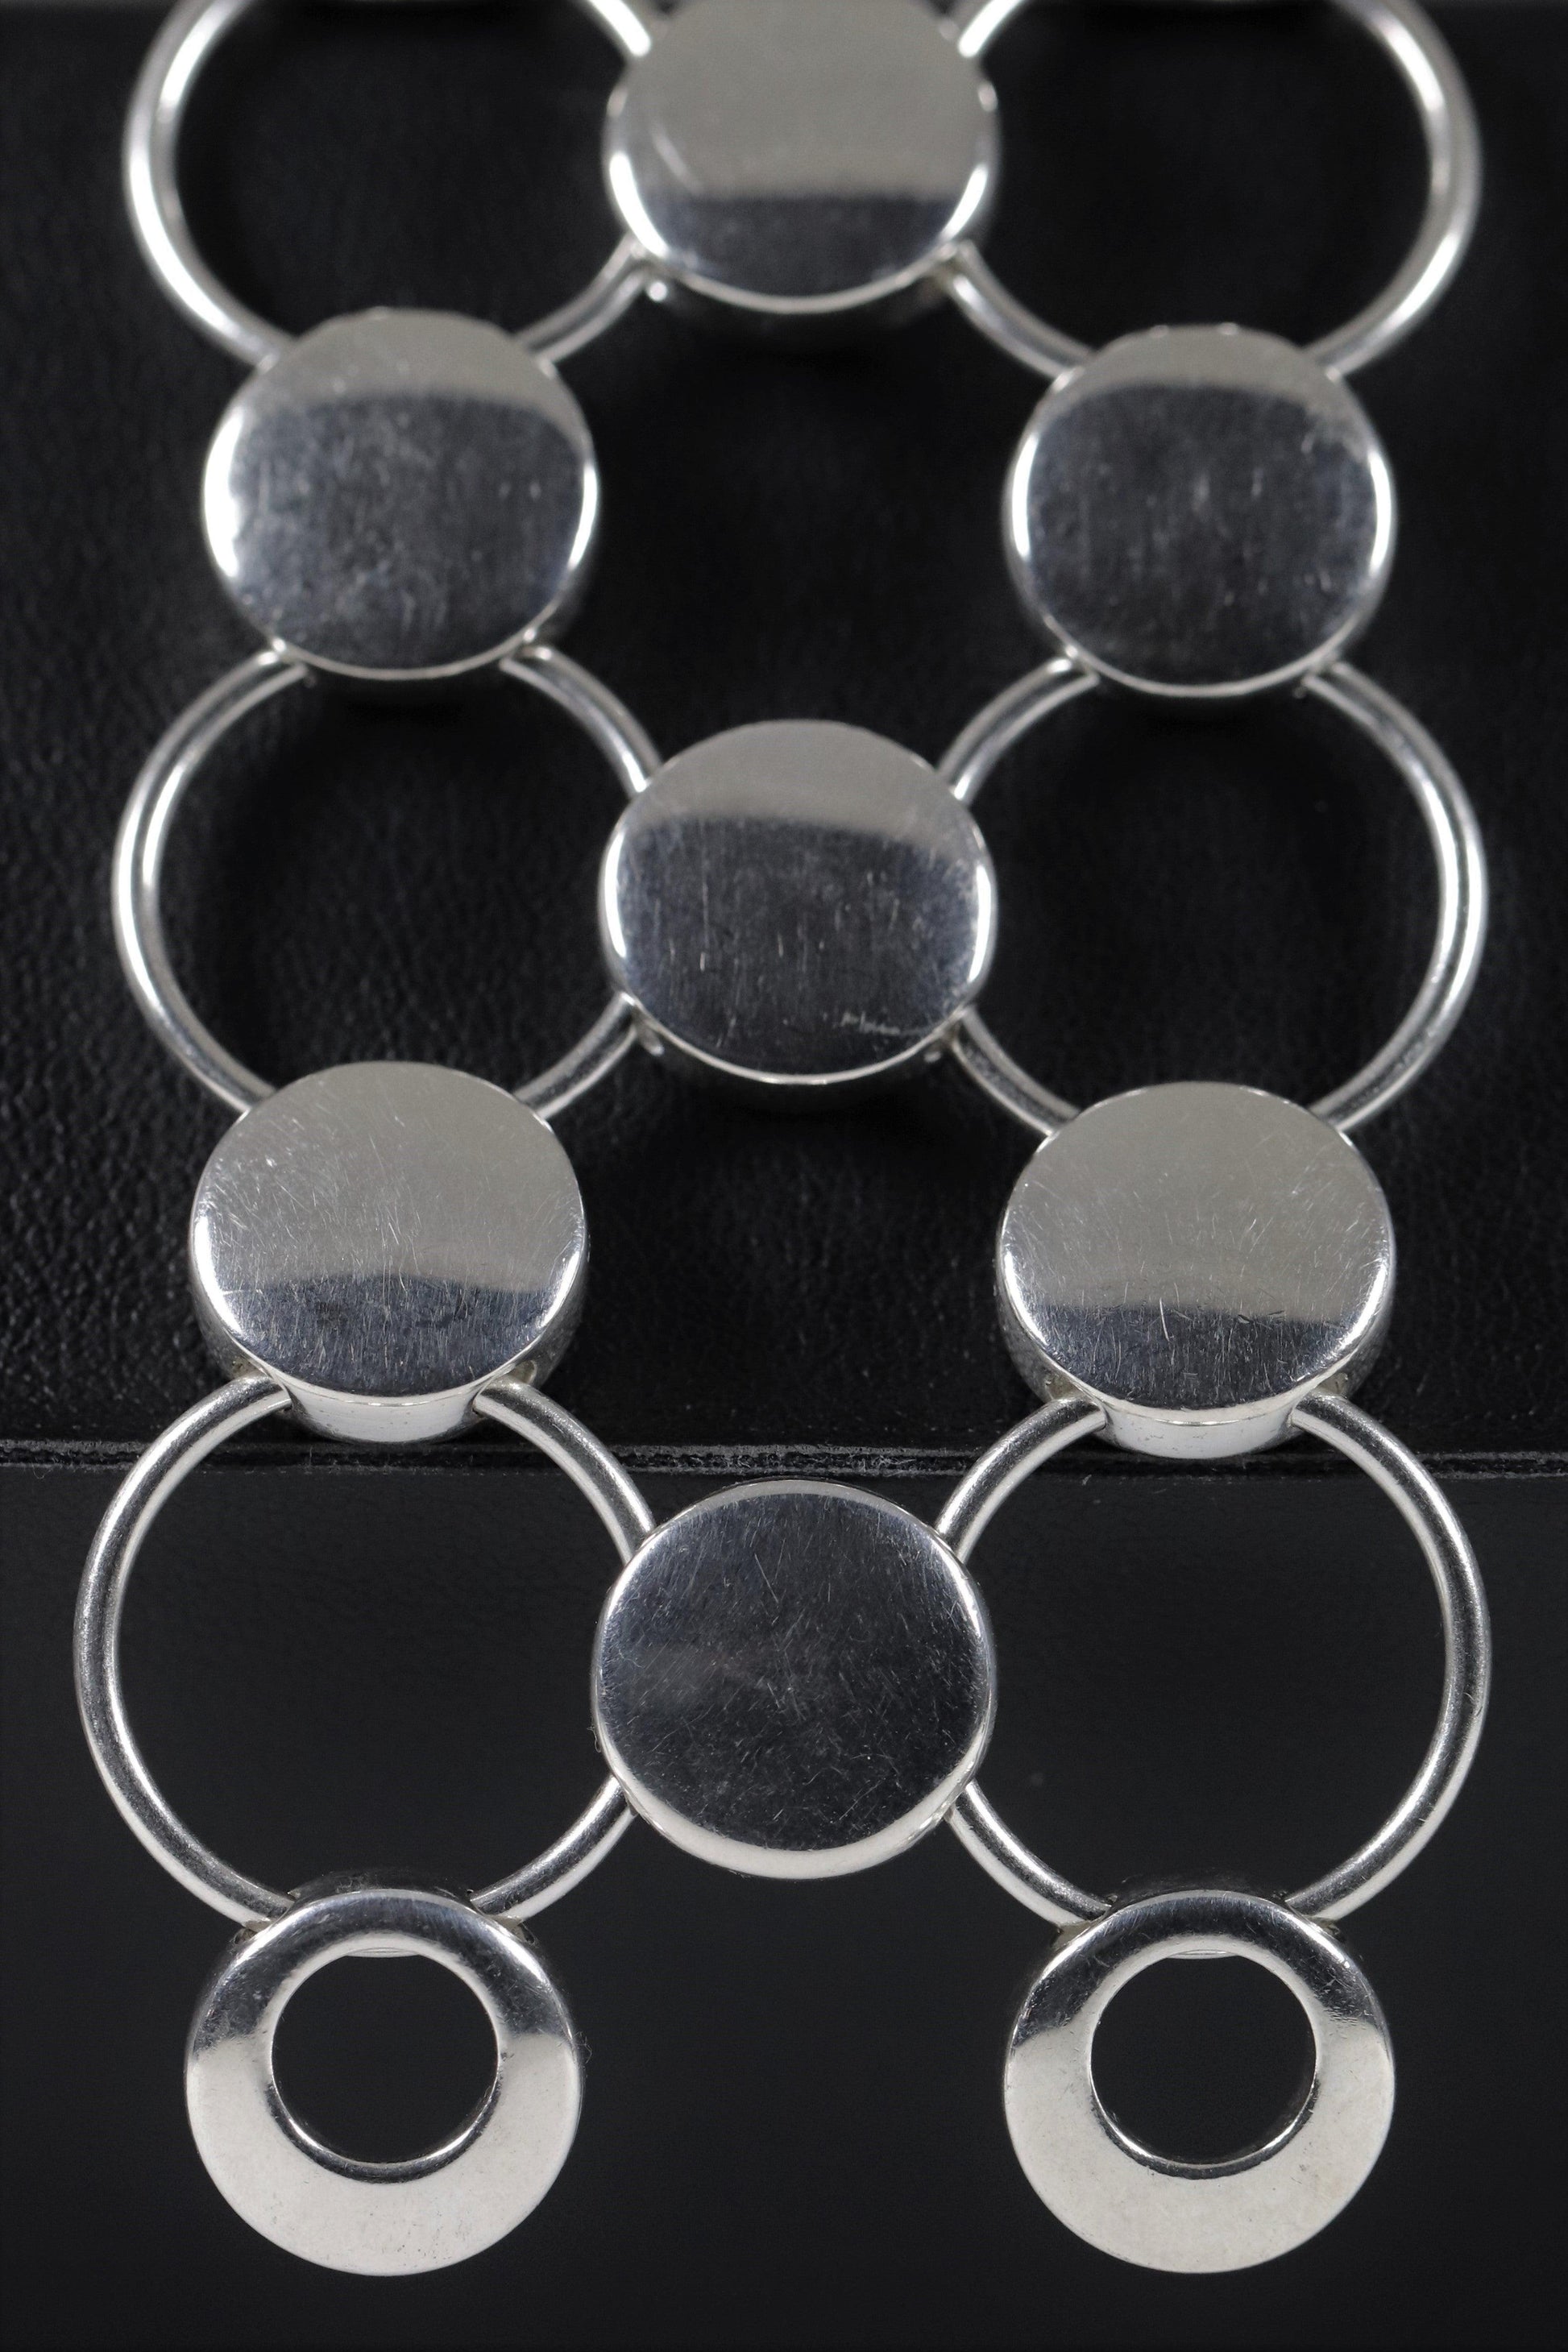 Vintage Georg Jensen Jewelry | Regitze Overgaard Avant Garde Circle Bracelet 464 - Carmel Fine Silver Jewelry